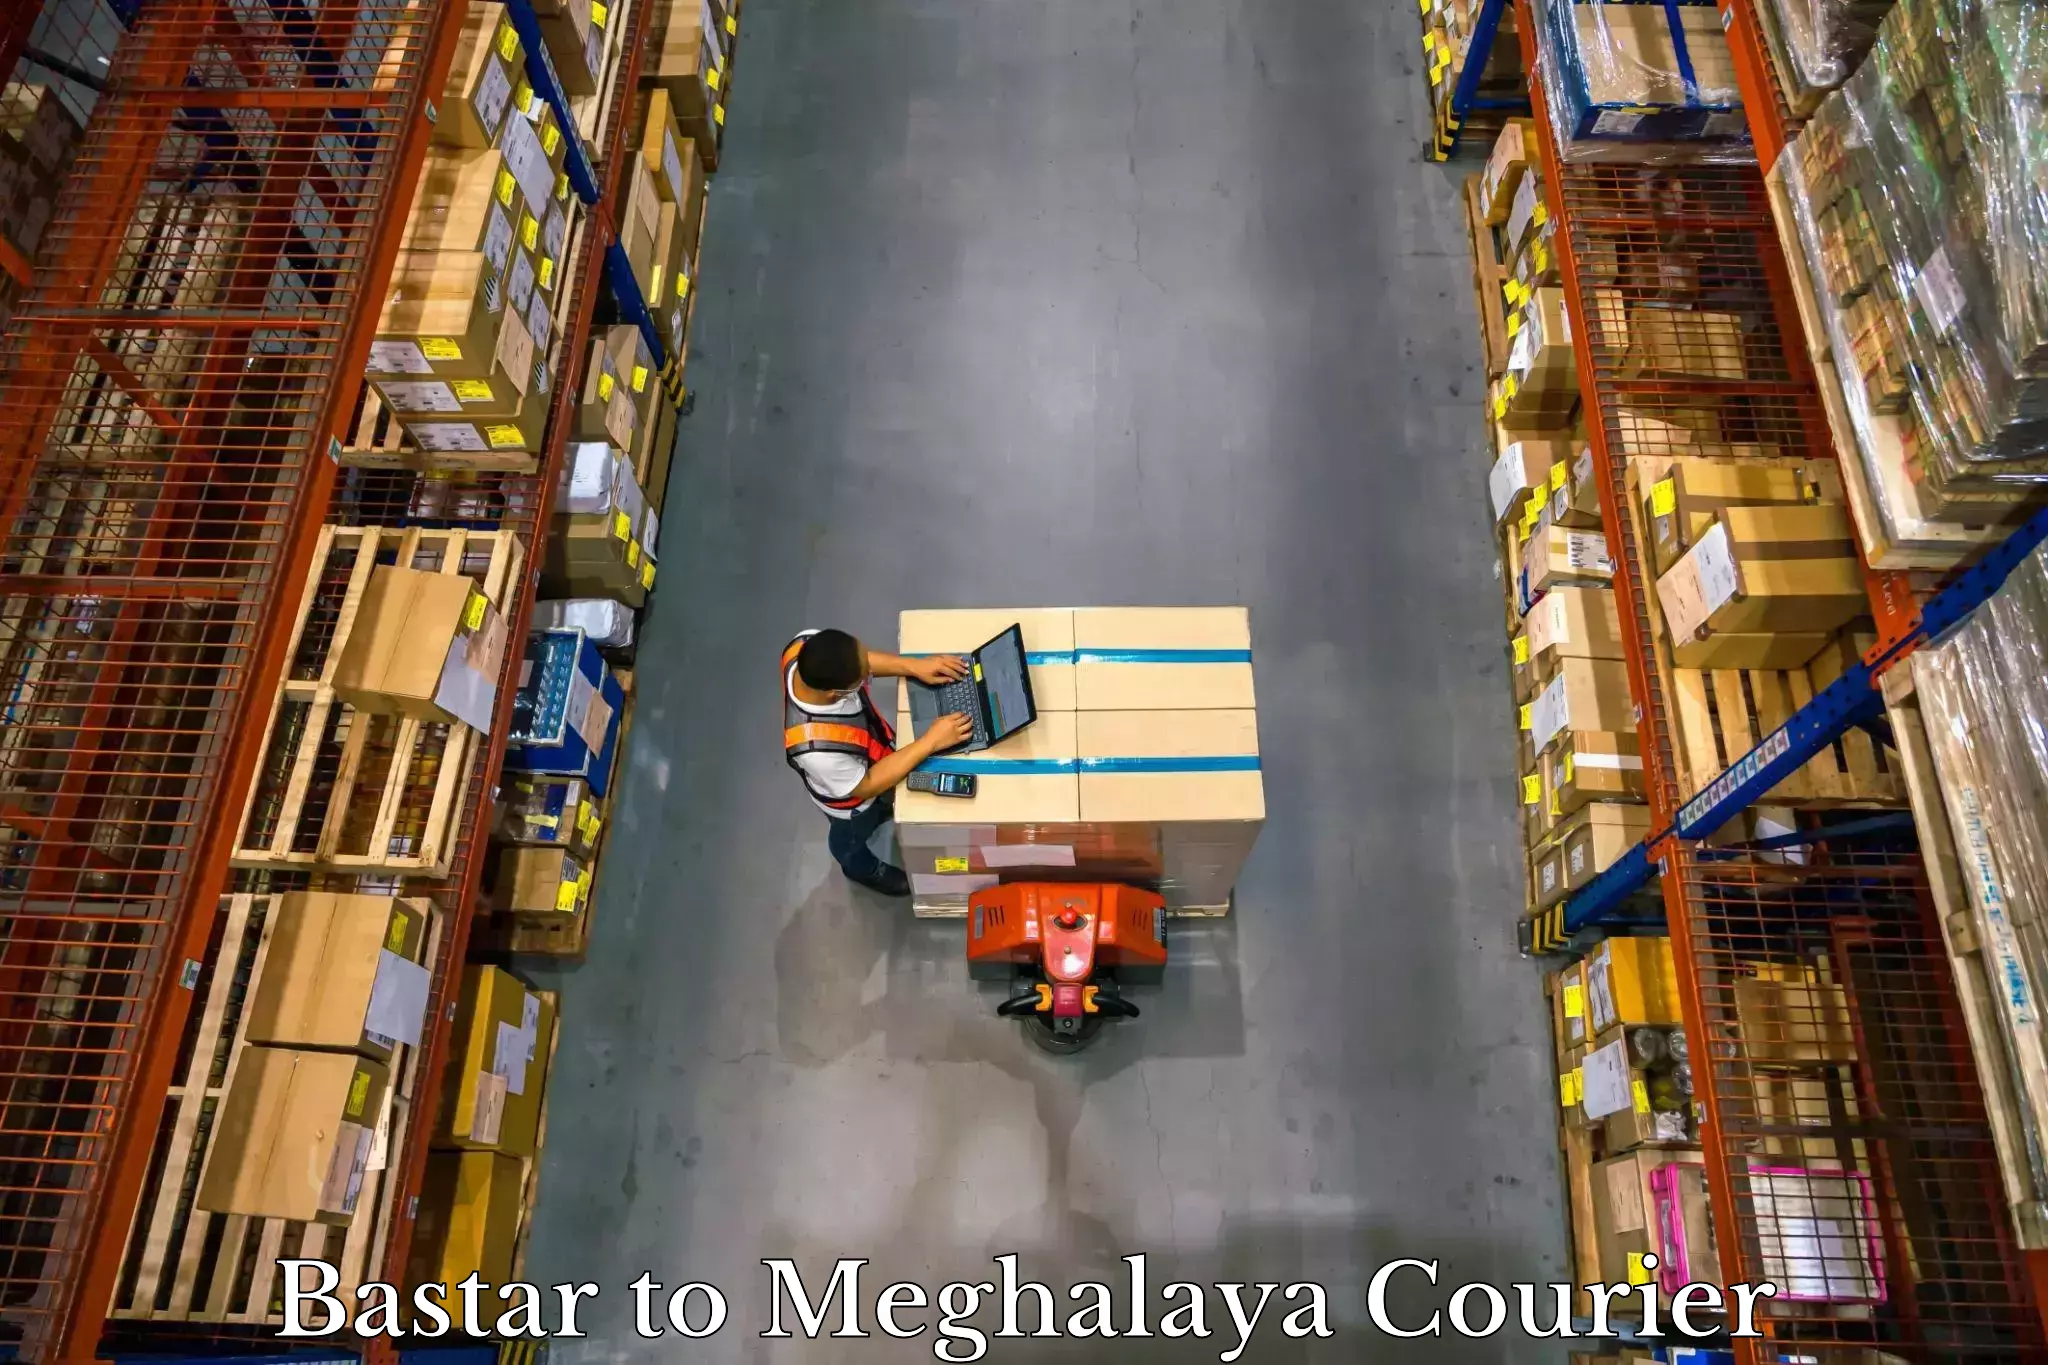 Baggage shipping quotes Bastar to Meghalaya